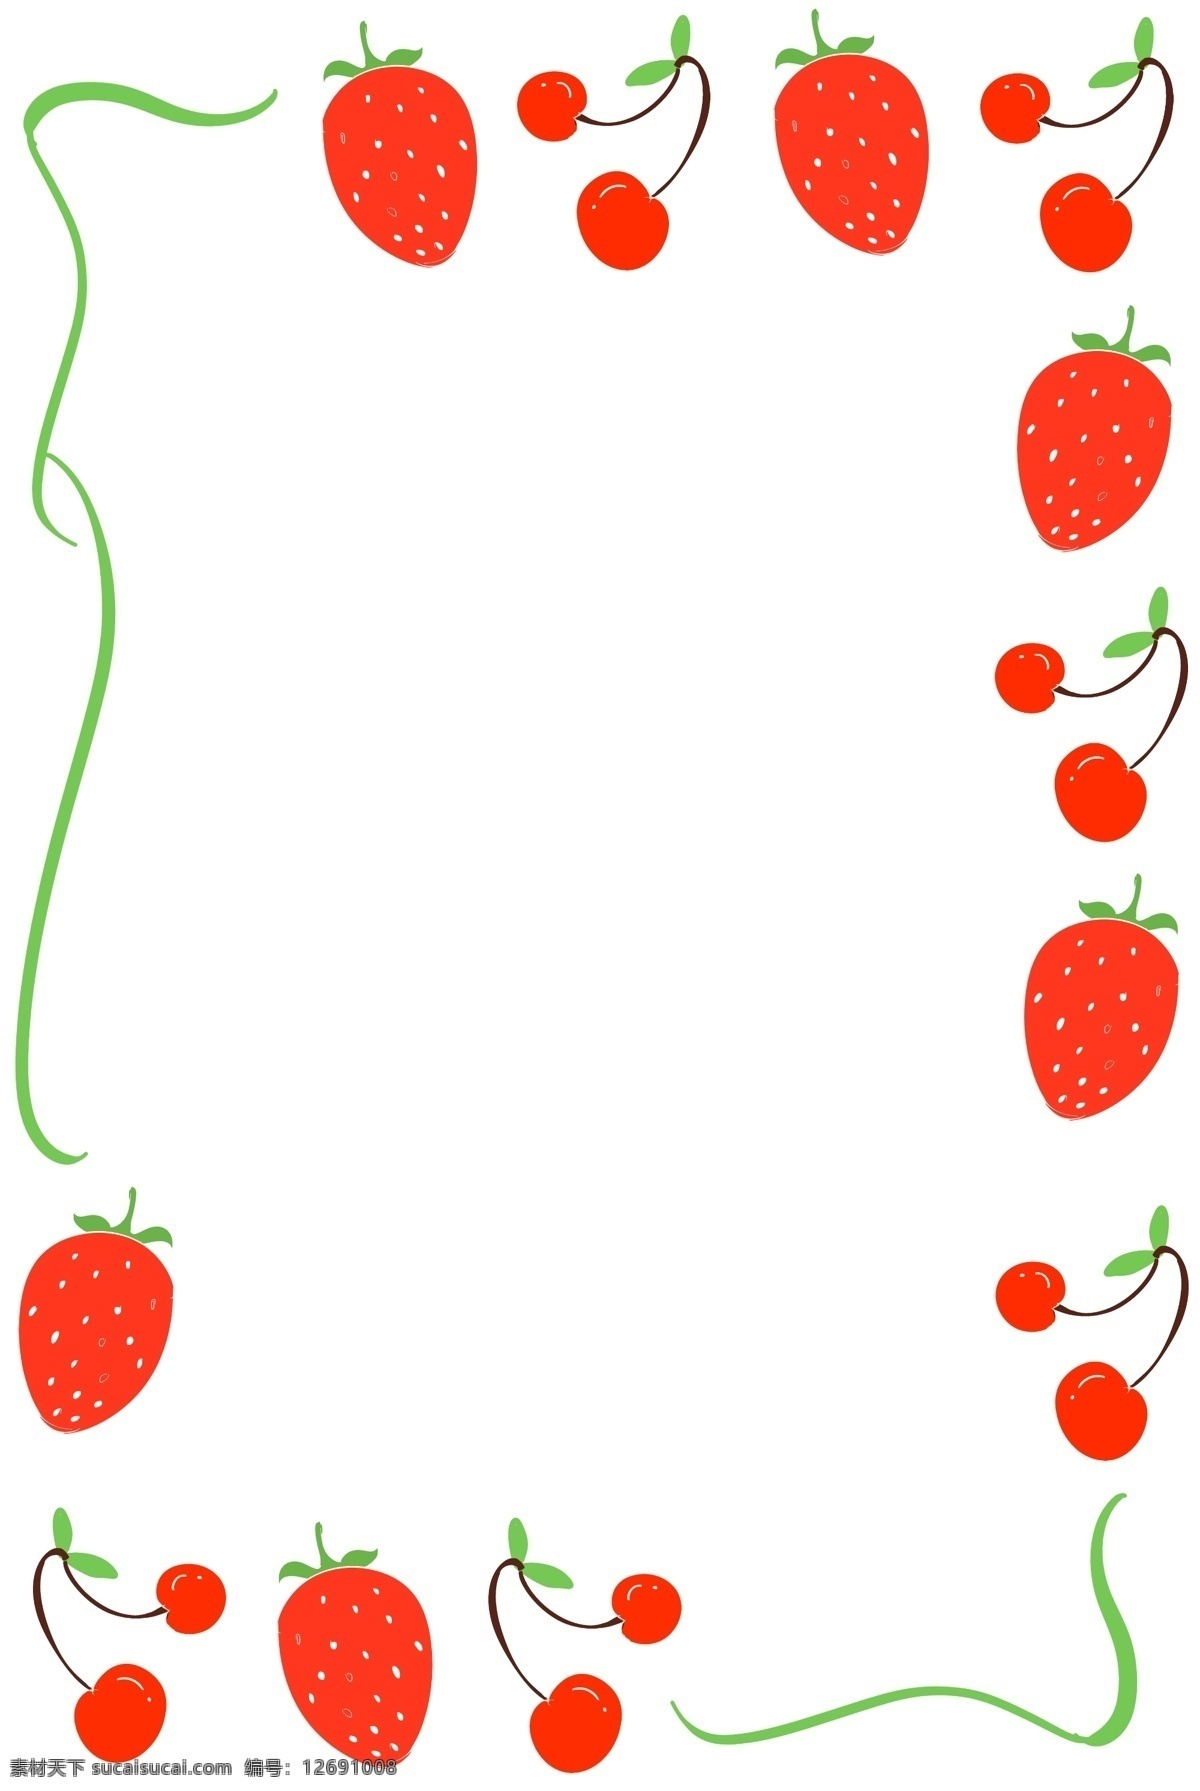 手绘 水果 边框 插画 草莓边框 草莓 手绘水果边框 水果边框插画 草莓边框插图 草莓水果